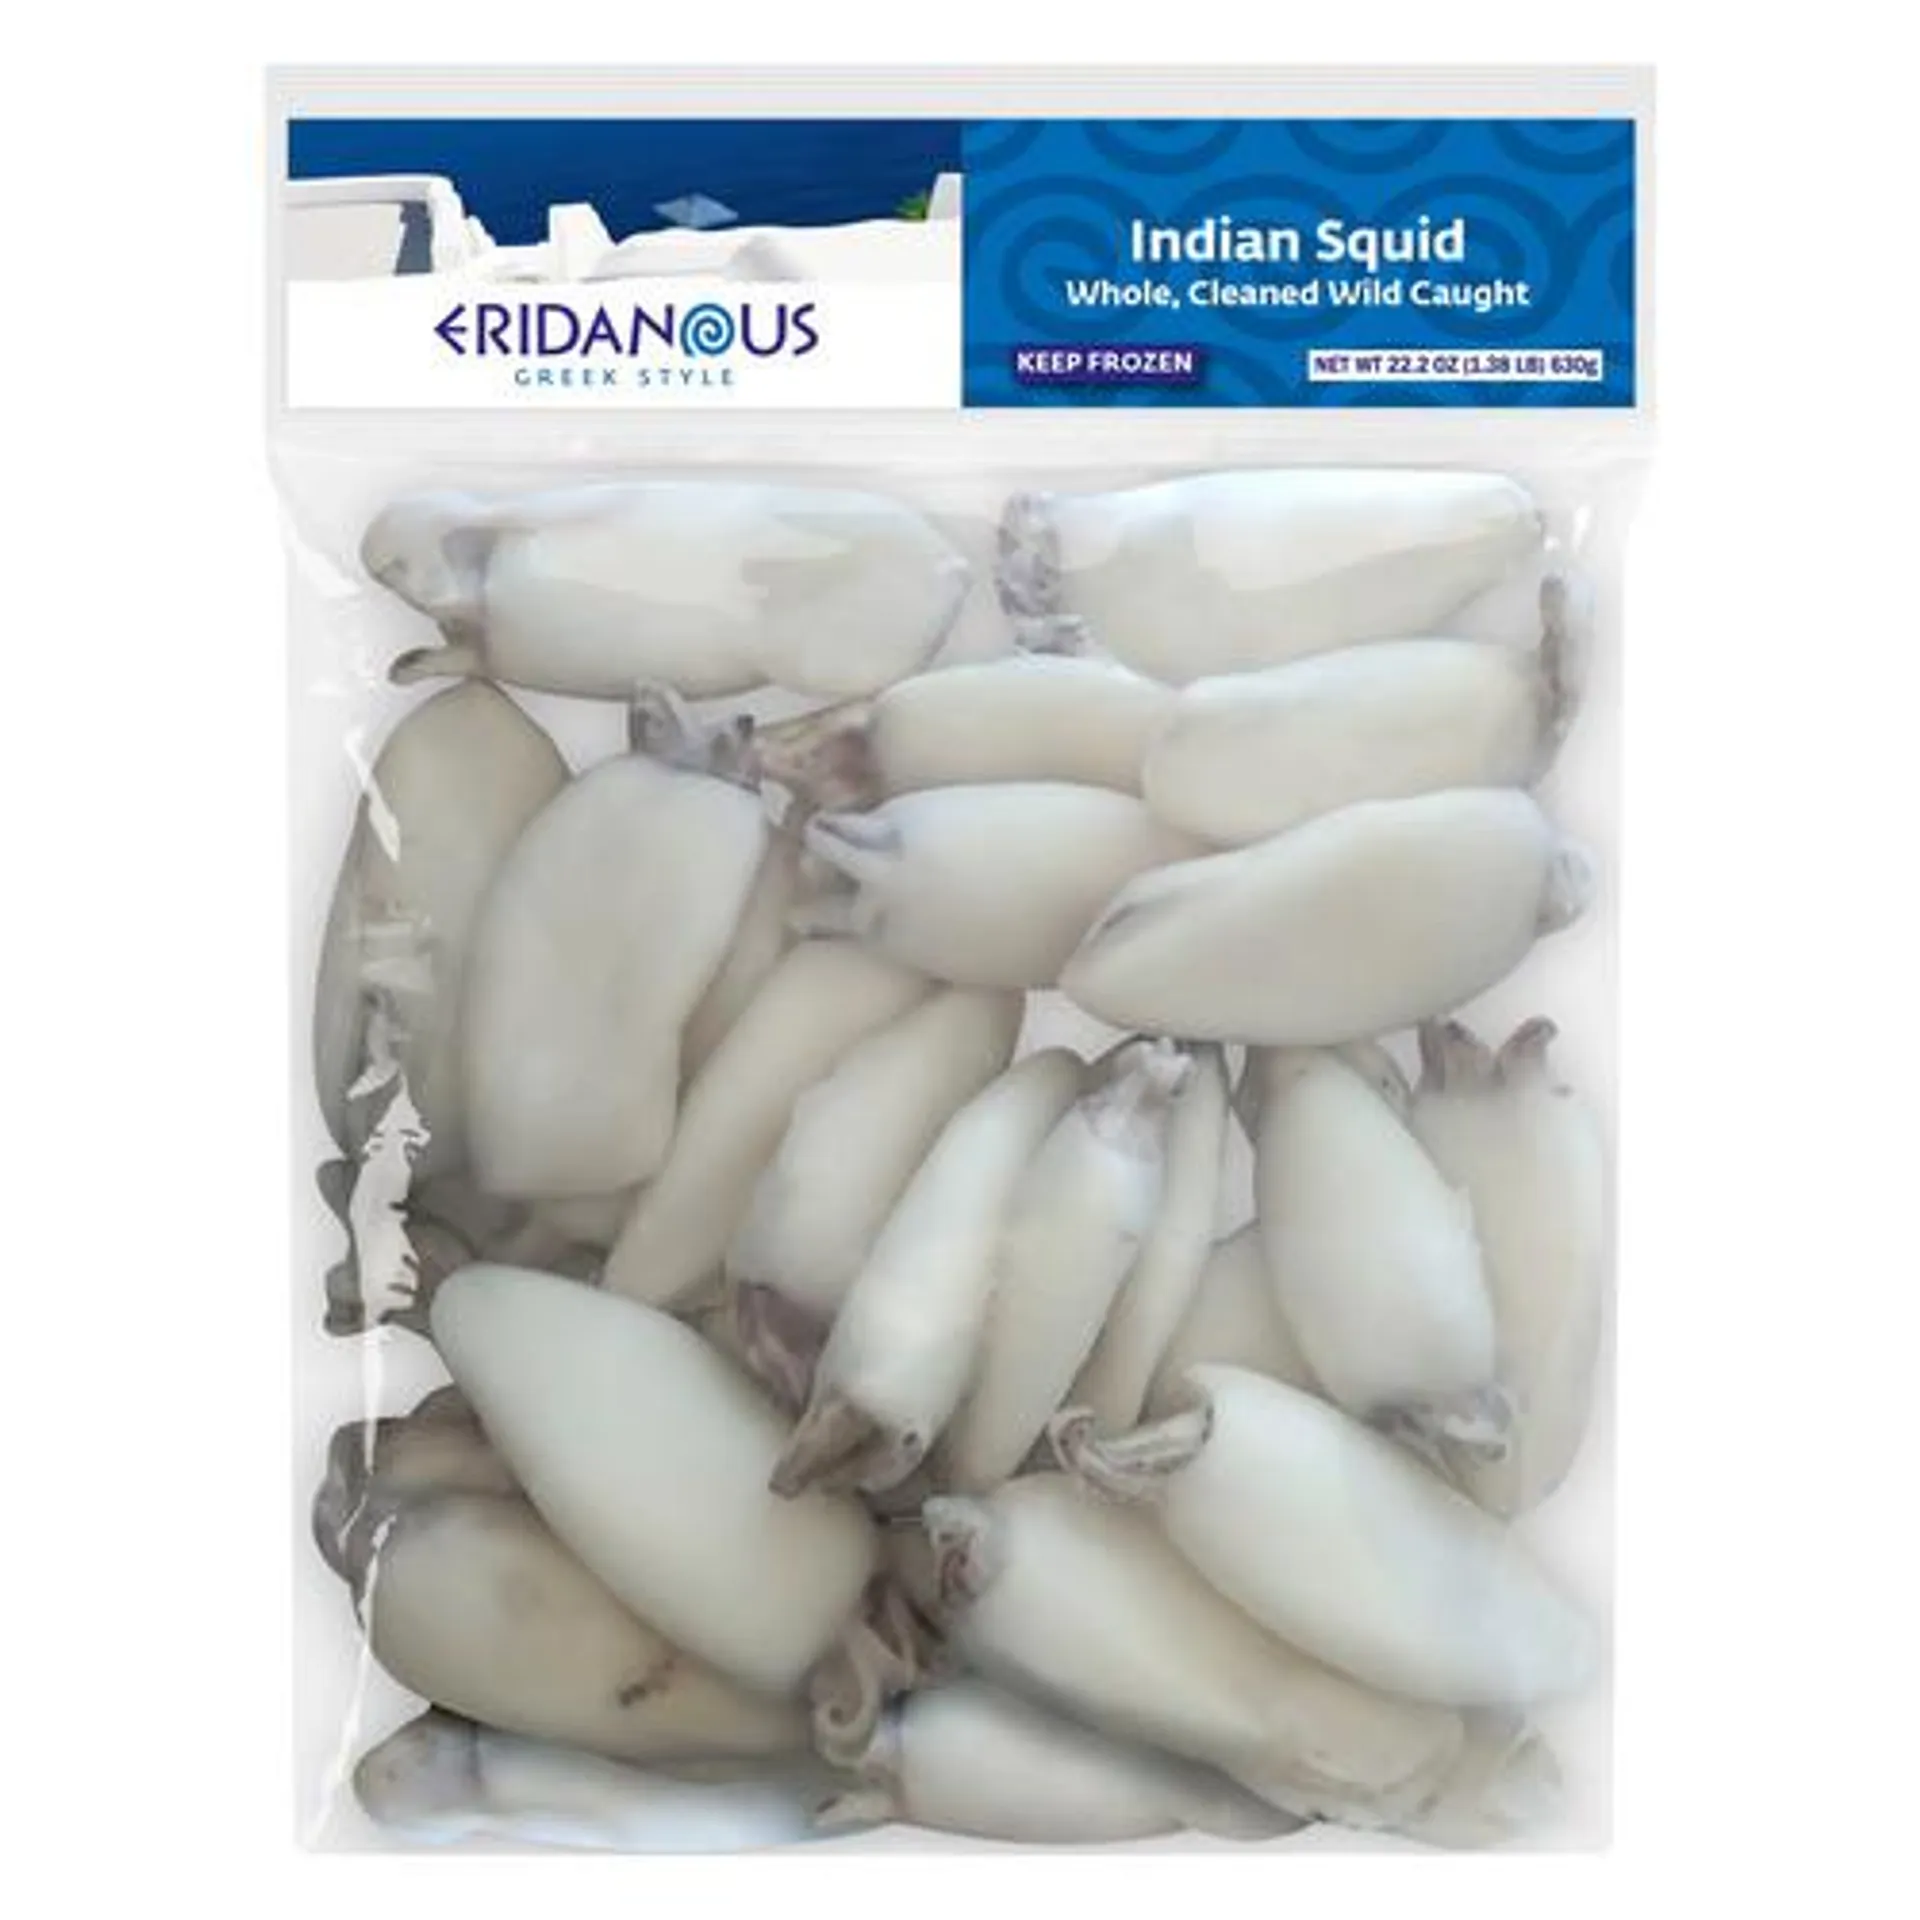 Eridanous frozen Indian squid